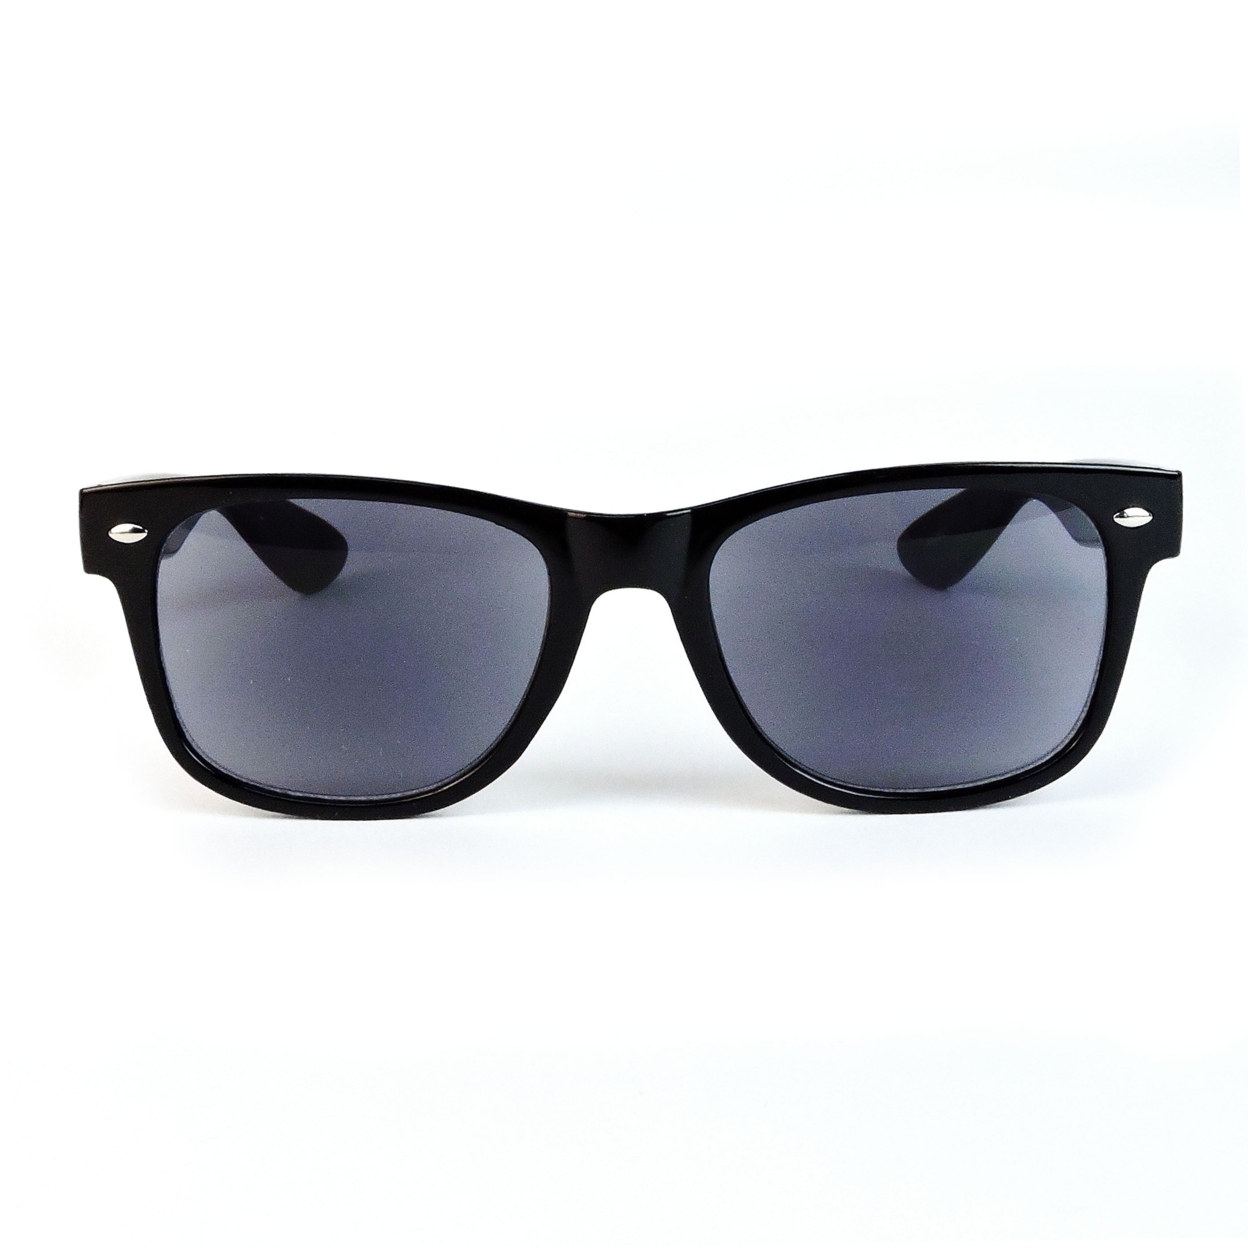 Sun Readers Full Lens Classic Frame 80's Retro Style Reading Sunglasses - Black, +1.75